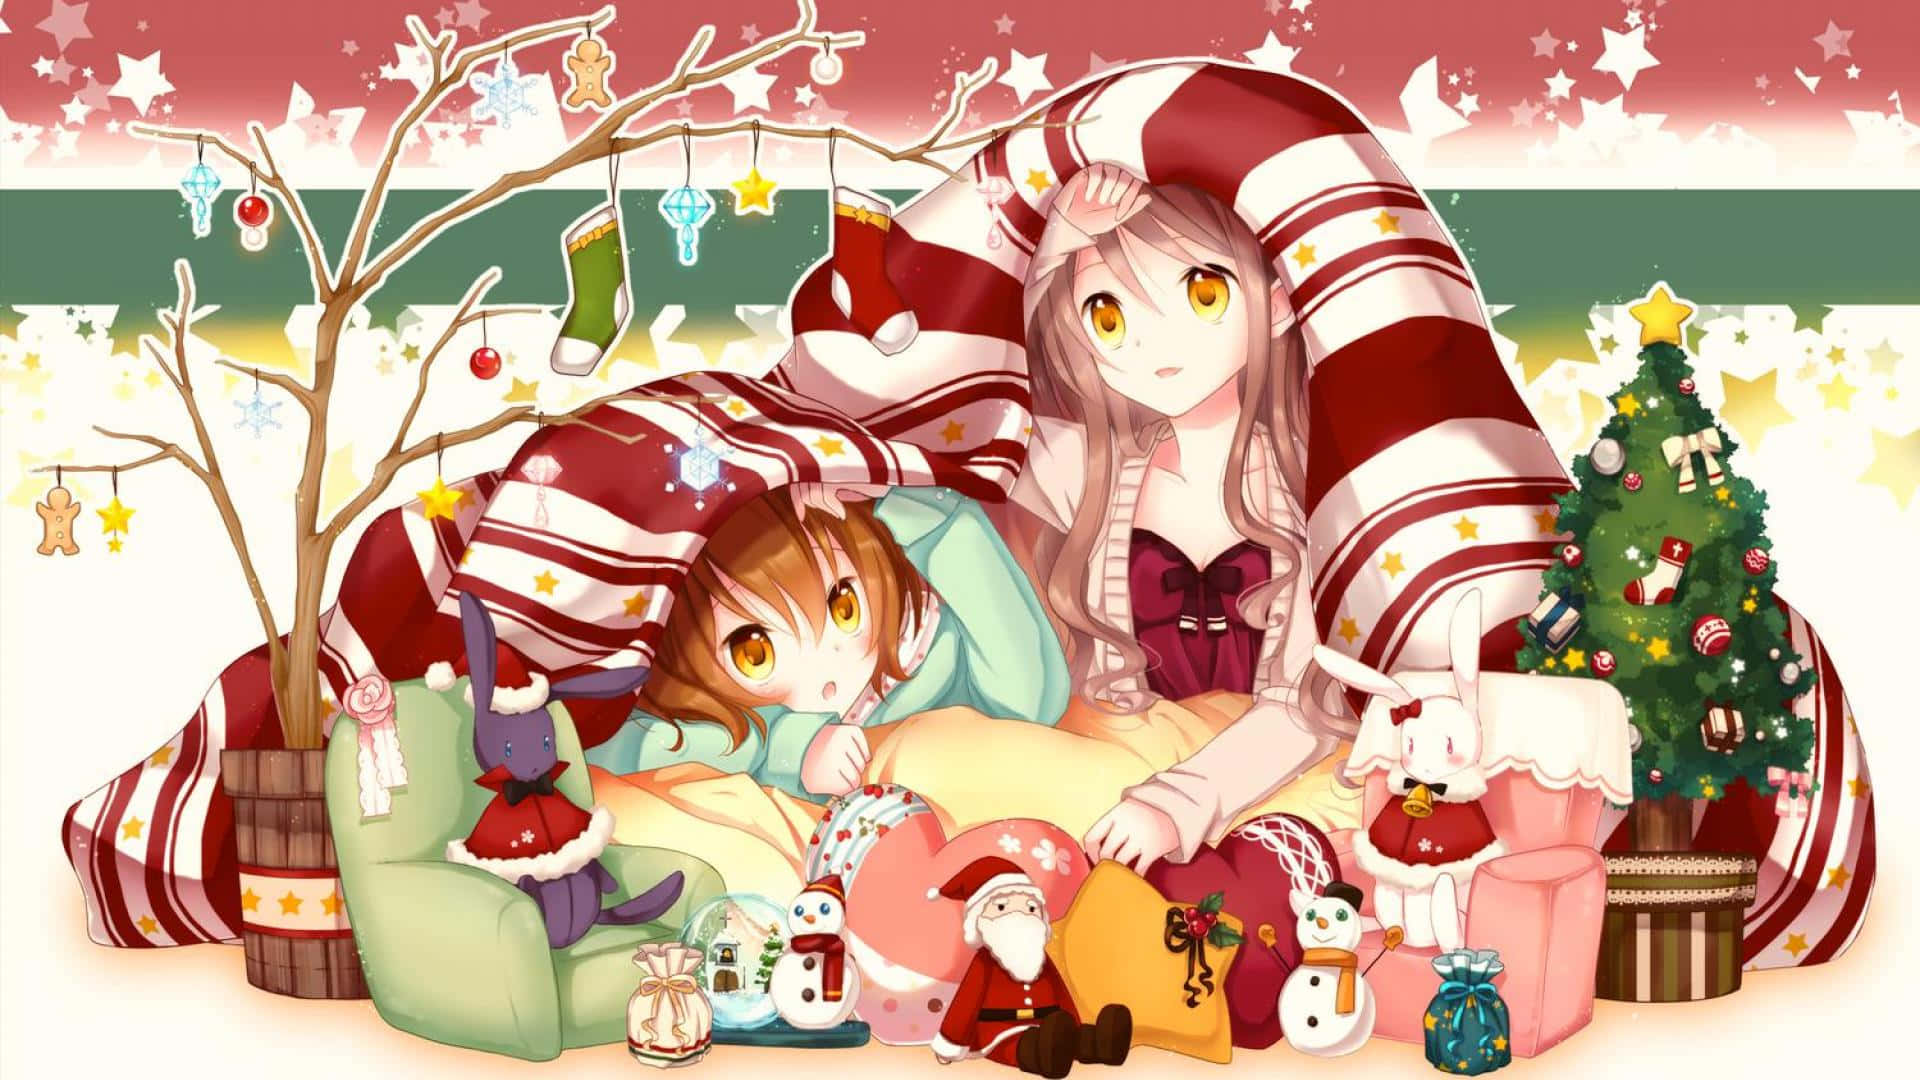 Feiernsie Die Freude An Anime In Diesem Weihnachten